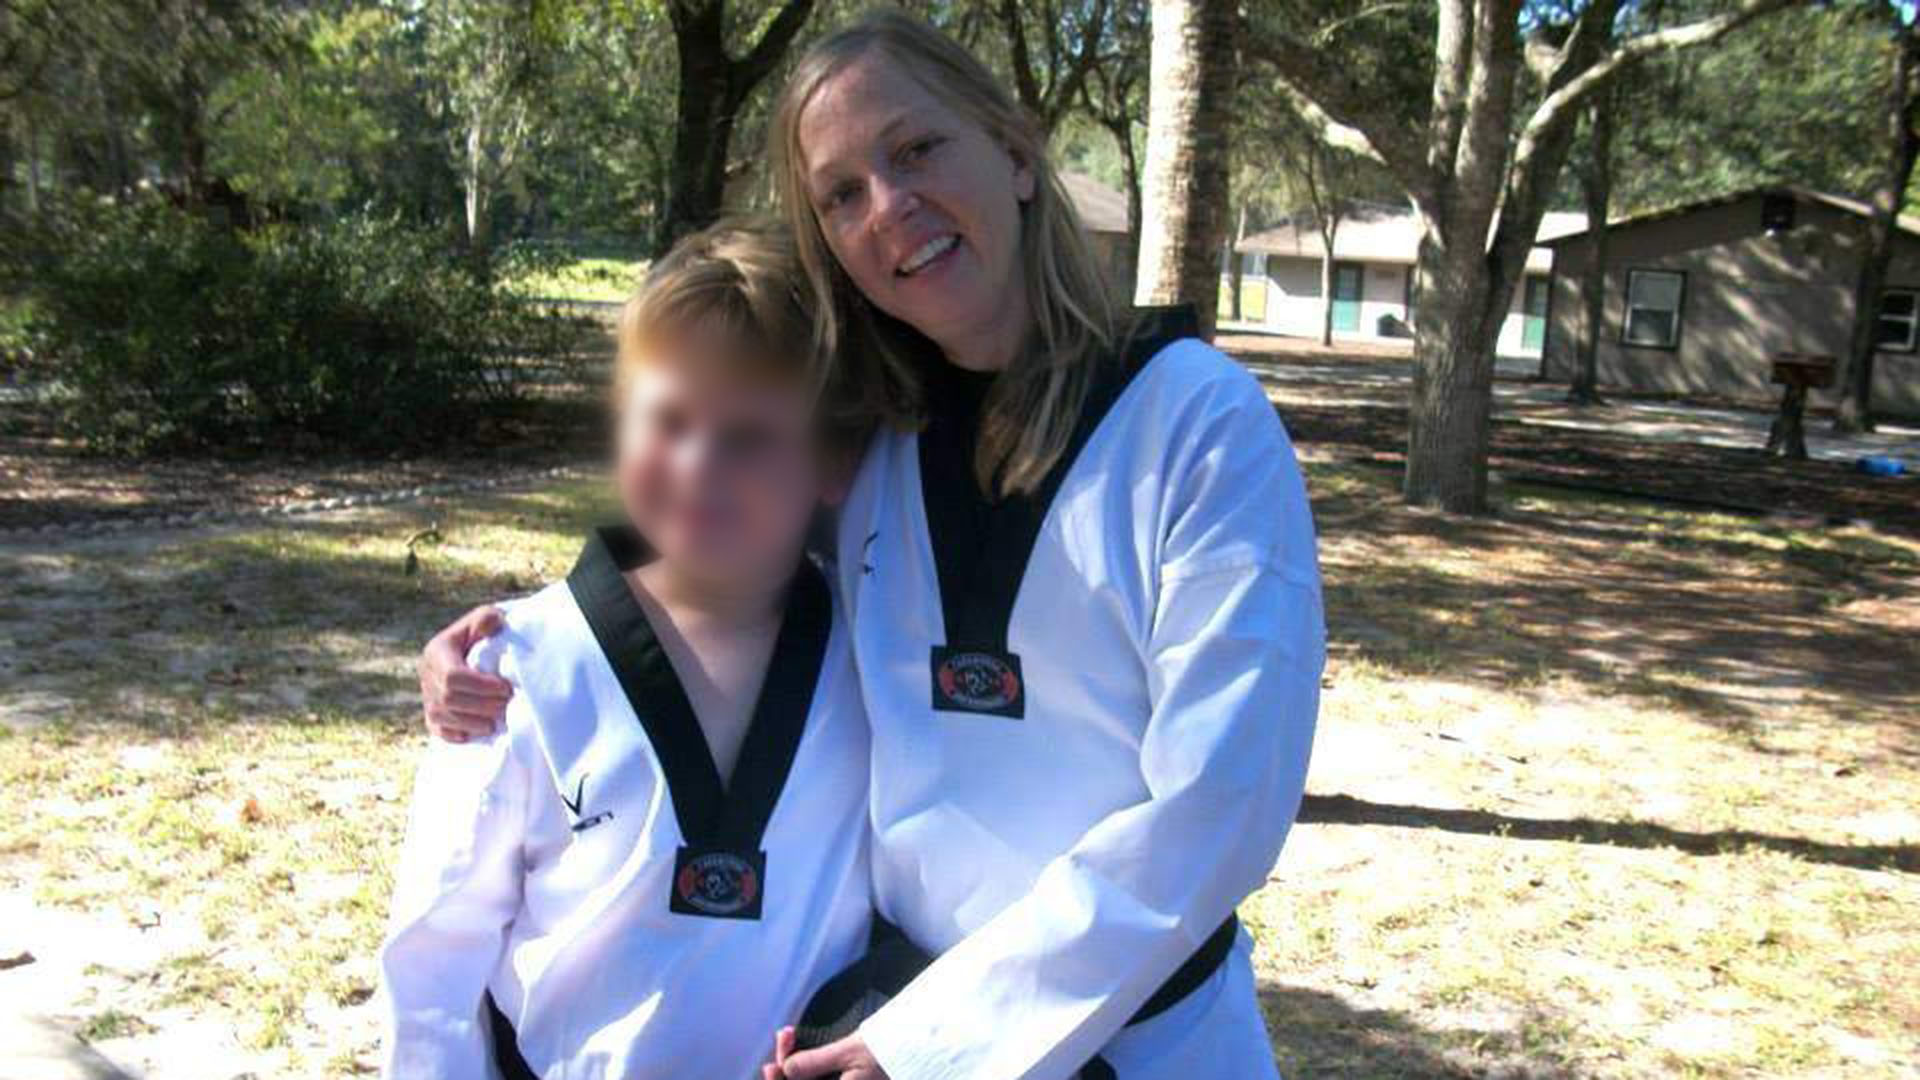 Tanto la madre como el menor practicaban artes marciales